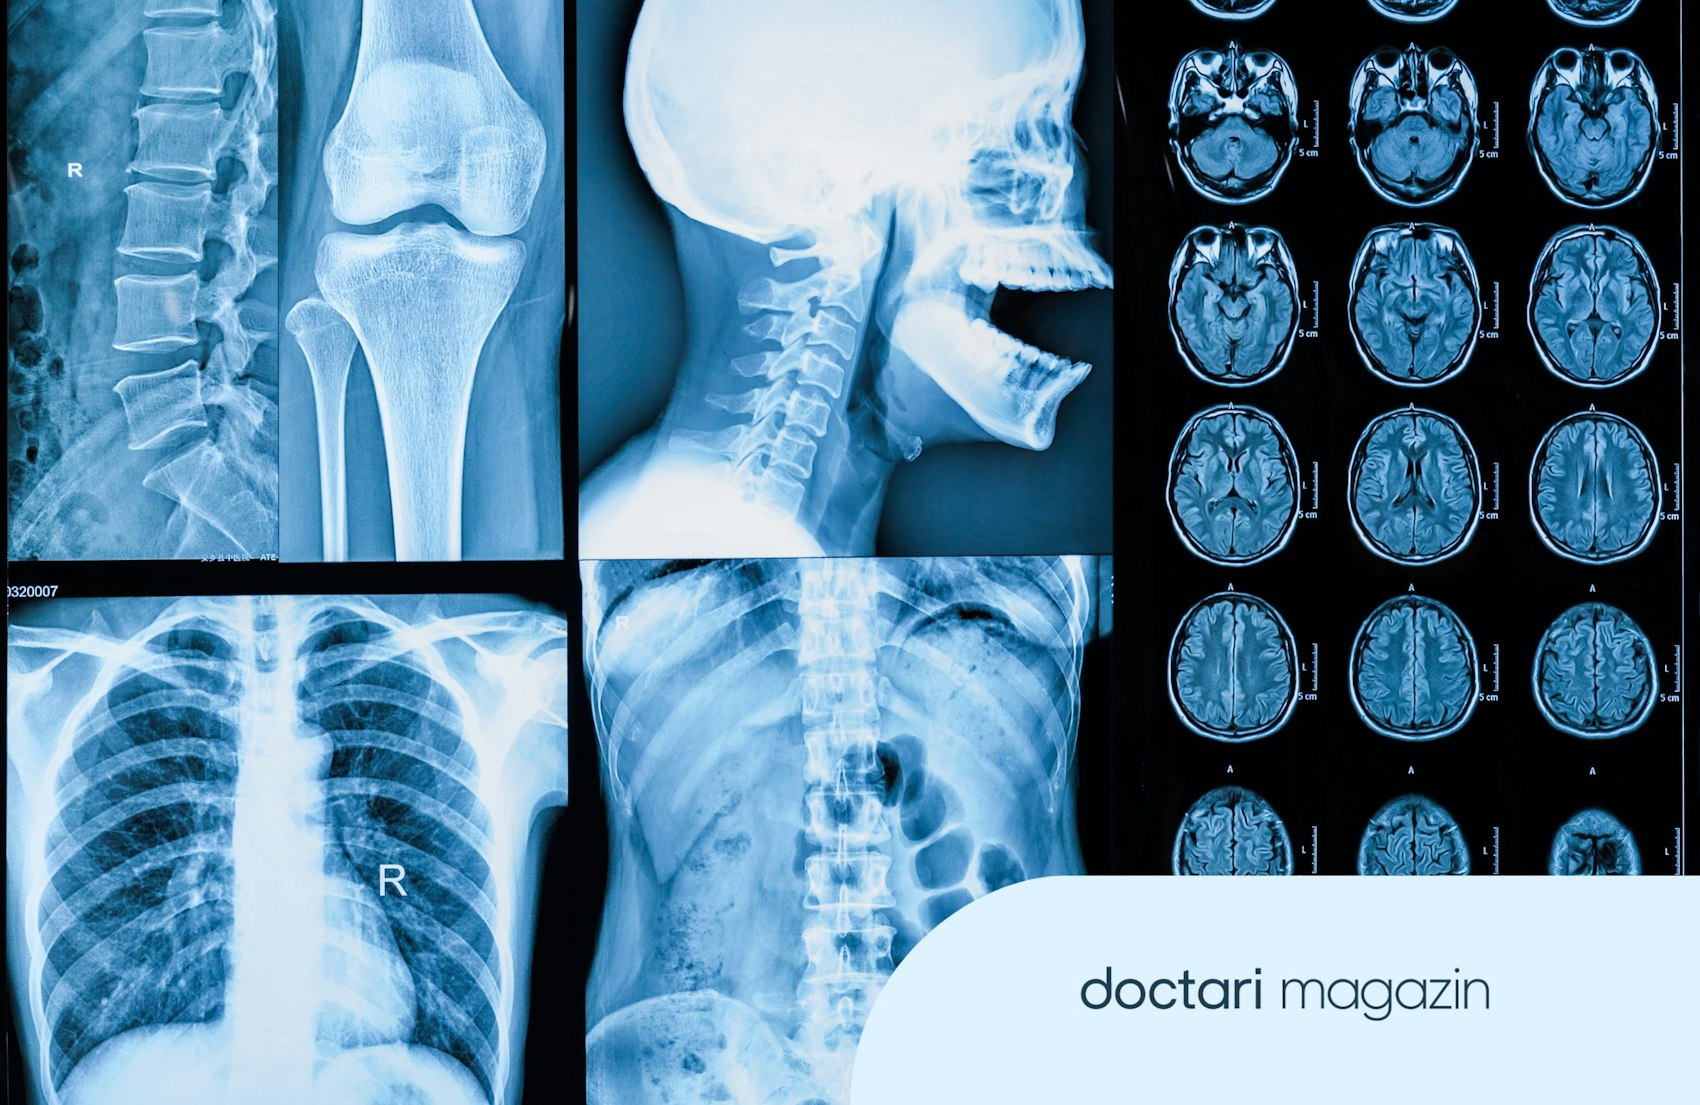 Sammlung von Röntgen- und MRT-Bildern